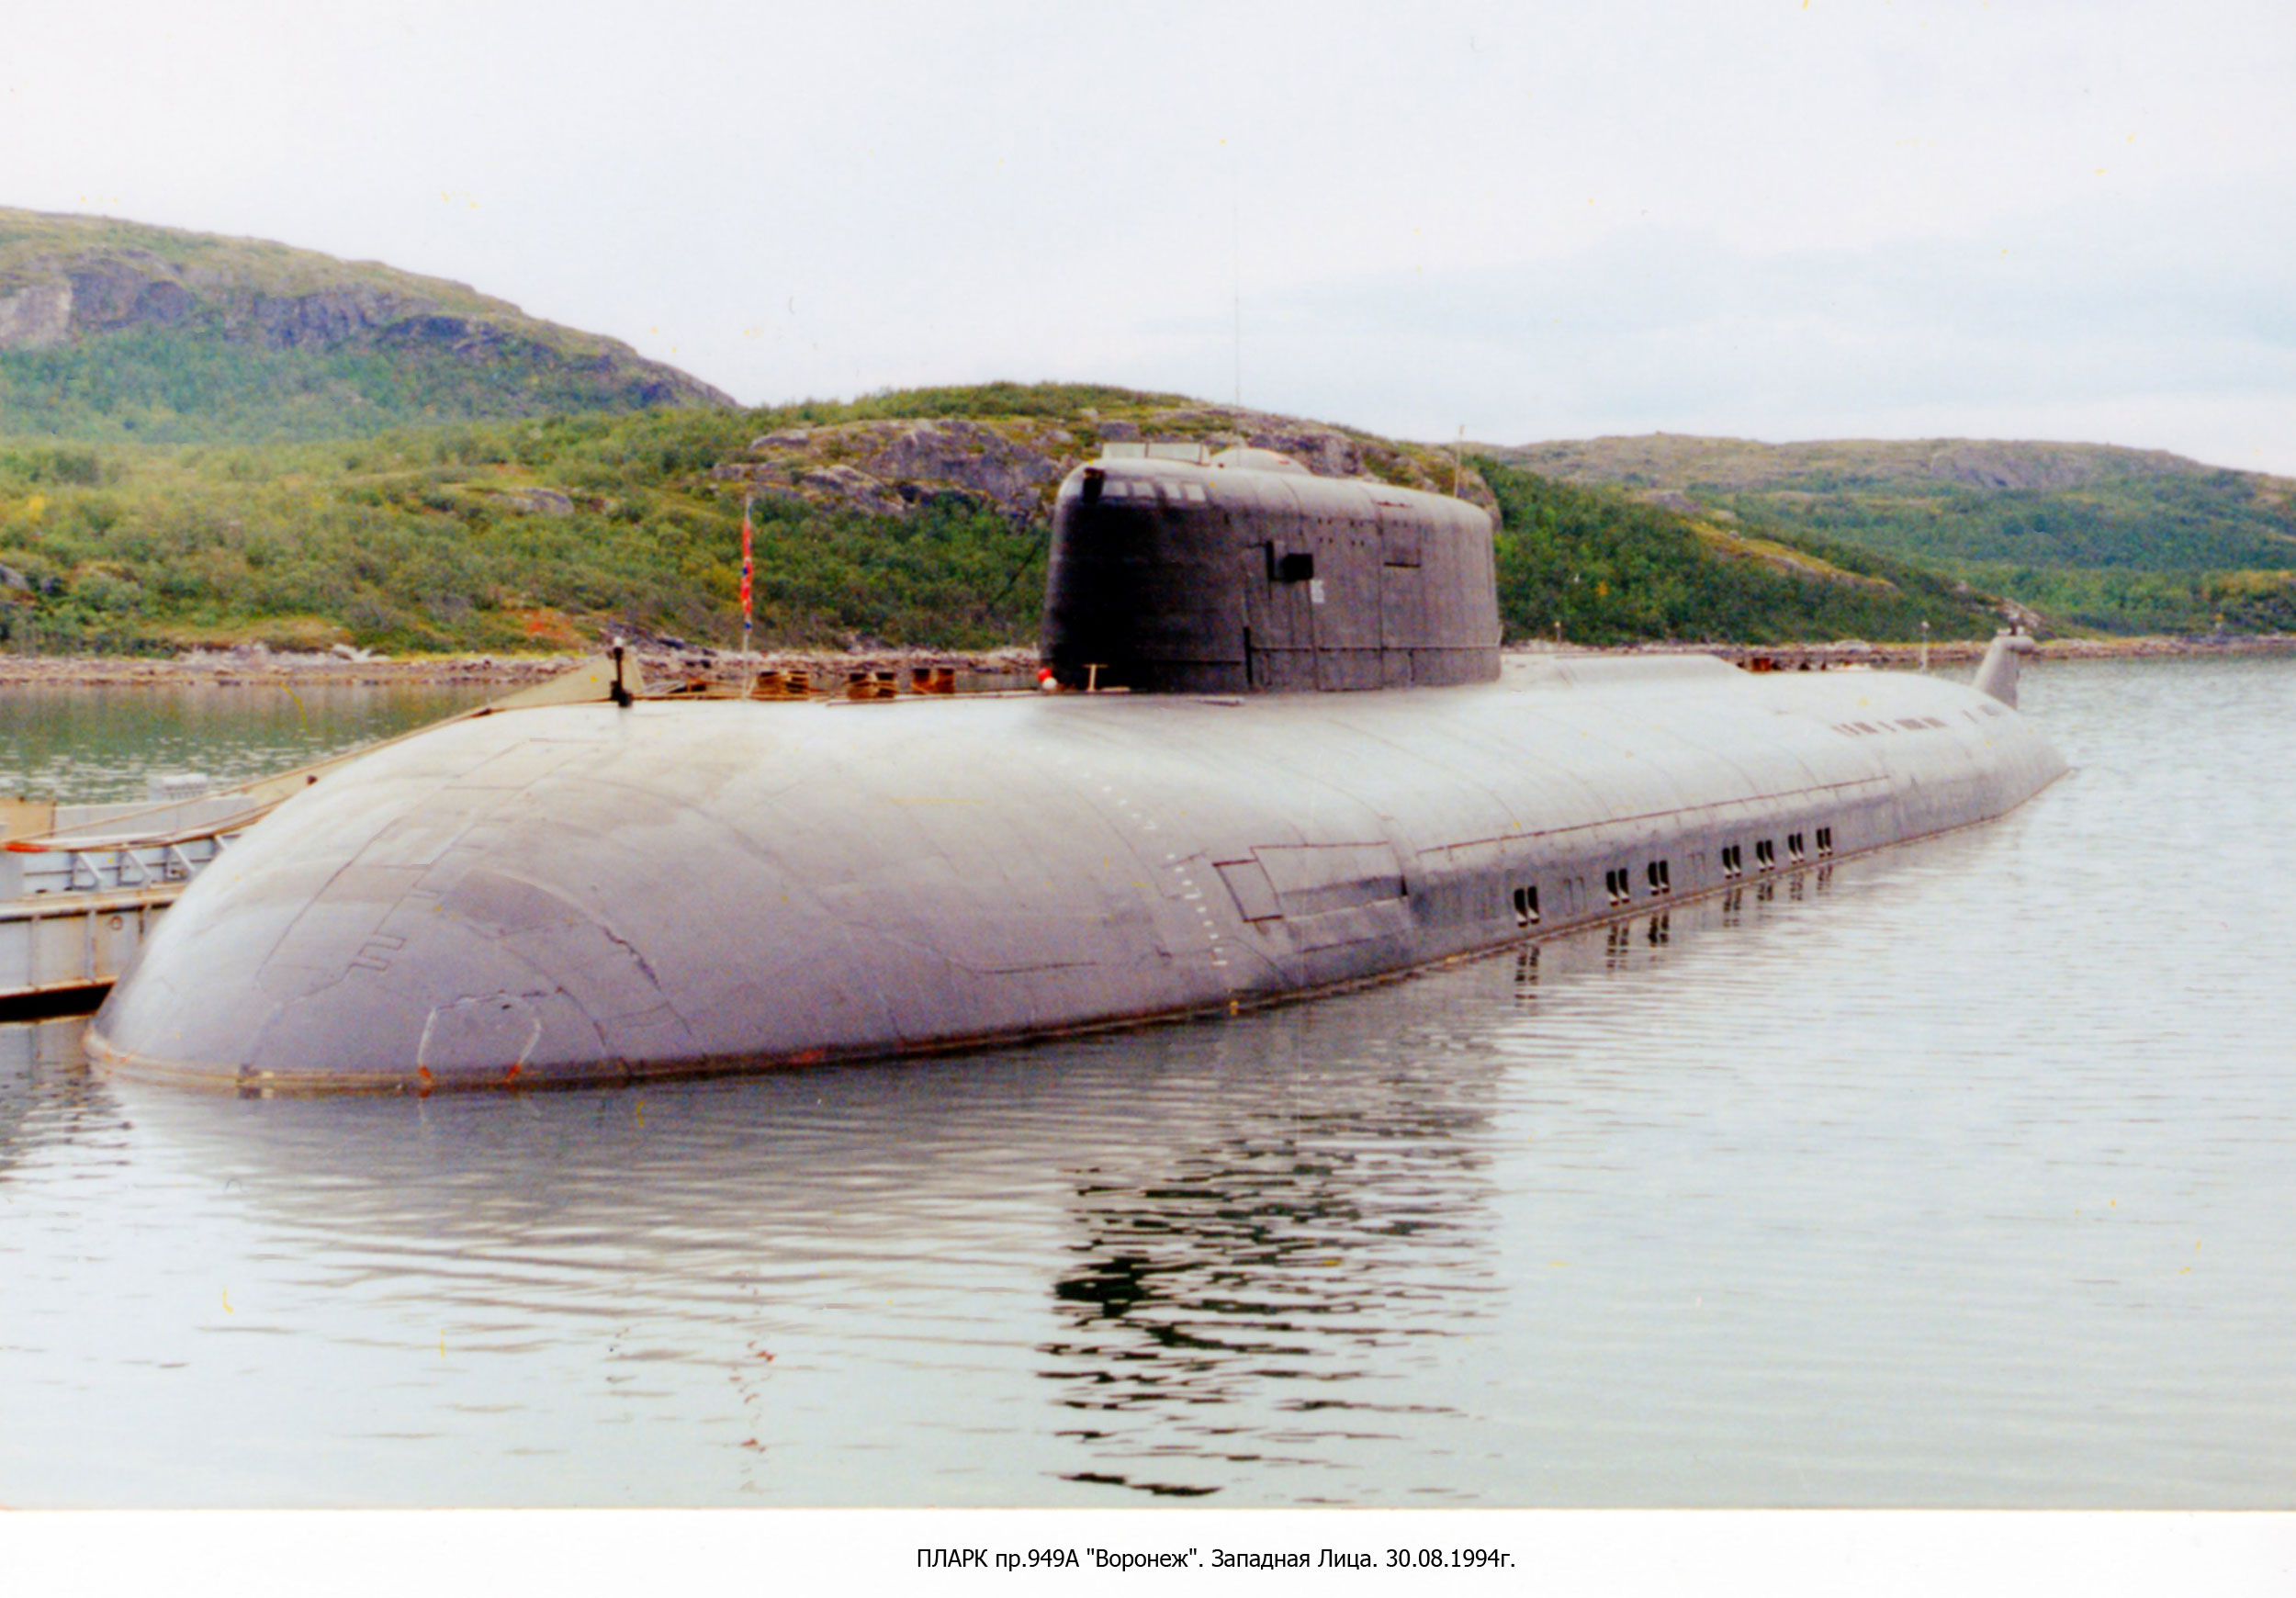 Подводные лодки проекта 949 «гранит»